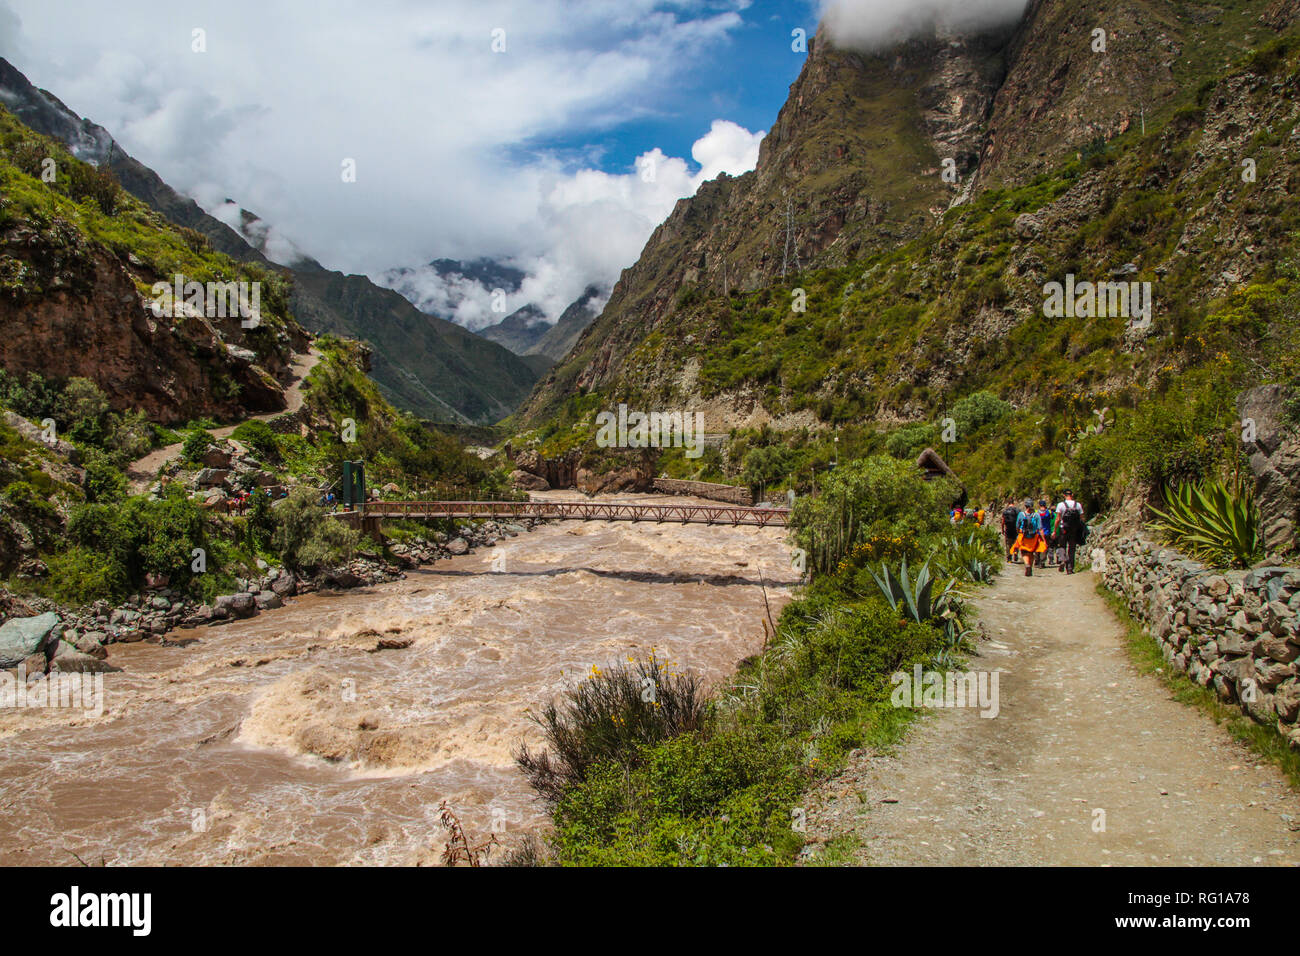 Vista mozzafiato del paesaggio andino a seguito del famoso sentiero escursionistico Inca Trail in Perù, attraverso un paesaggio misterioso di cloud forest Foto Stock